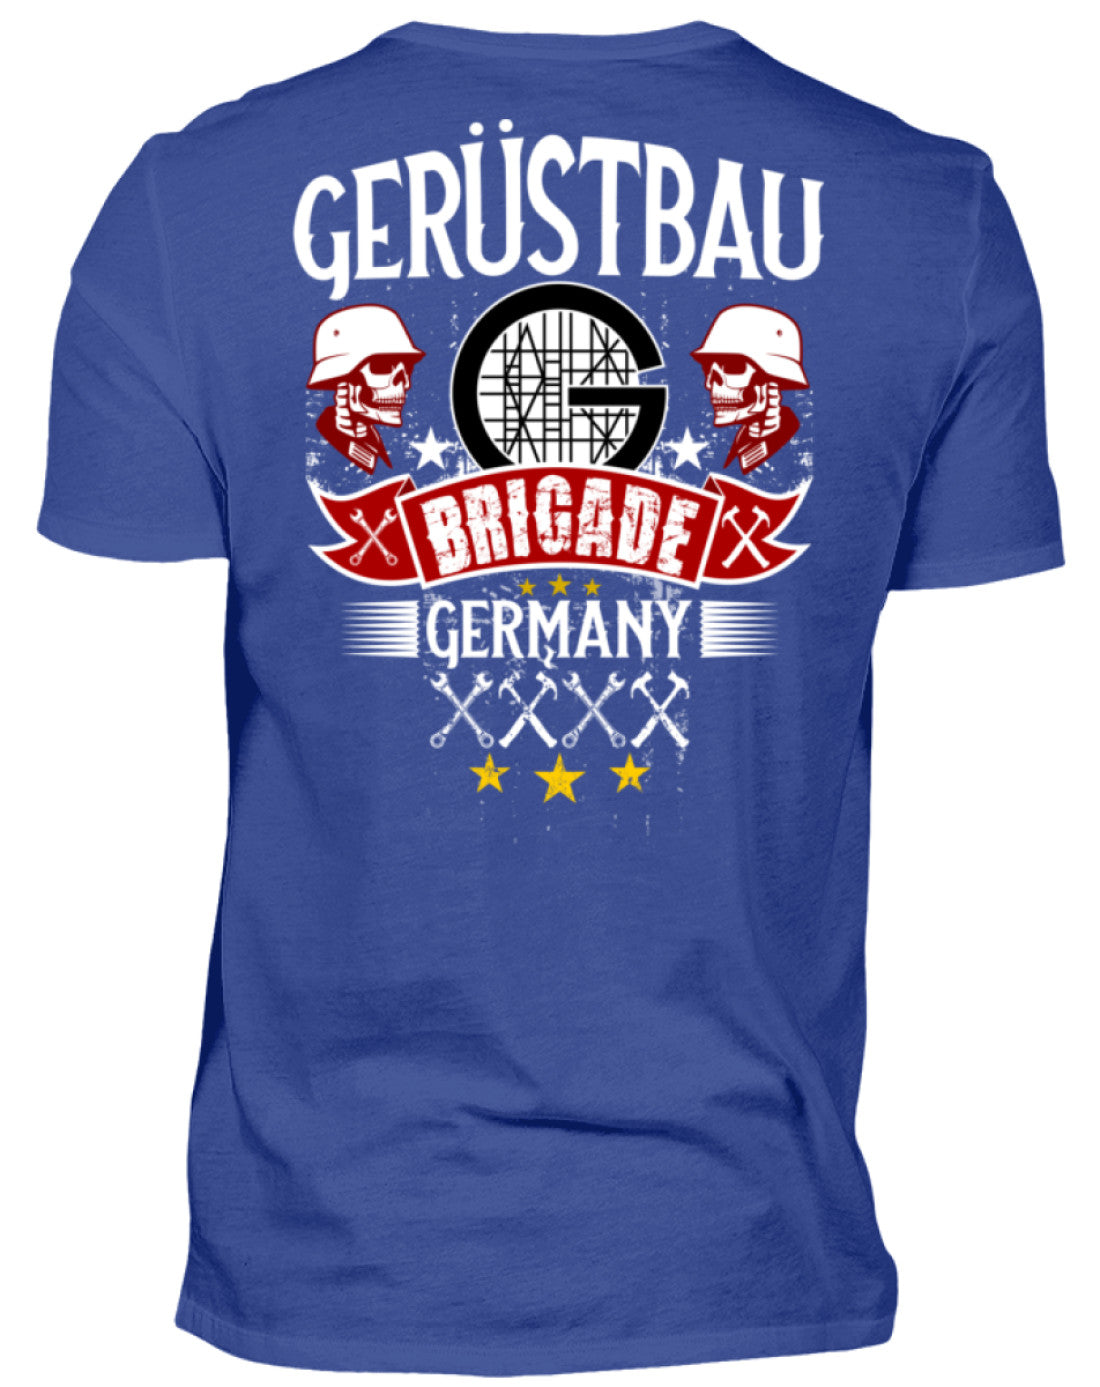 Gerüstbauer T-Shirt BRIGADE GERMANY €29.95 Gerüstbauer - Shop >>